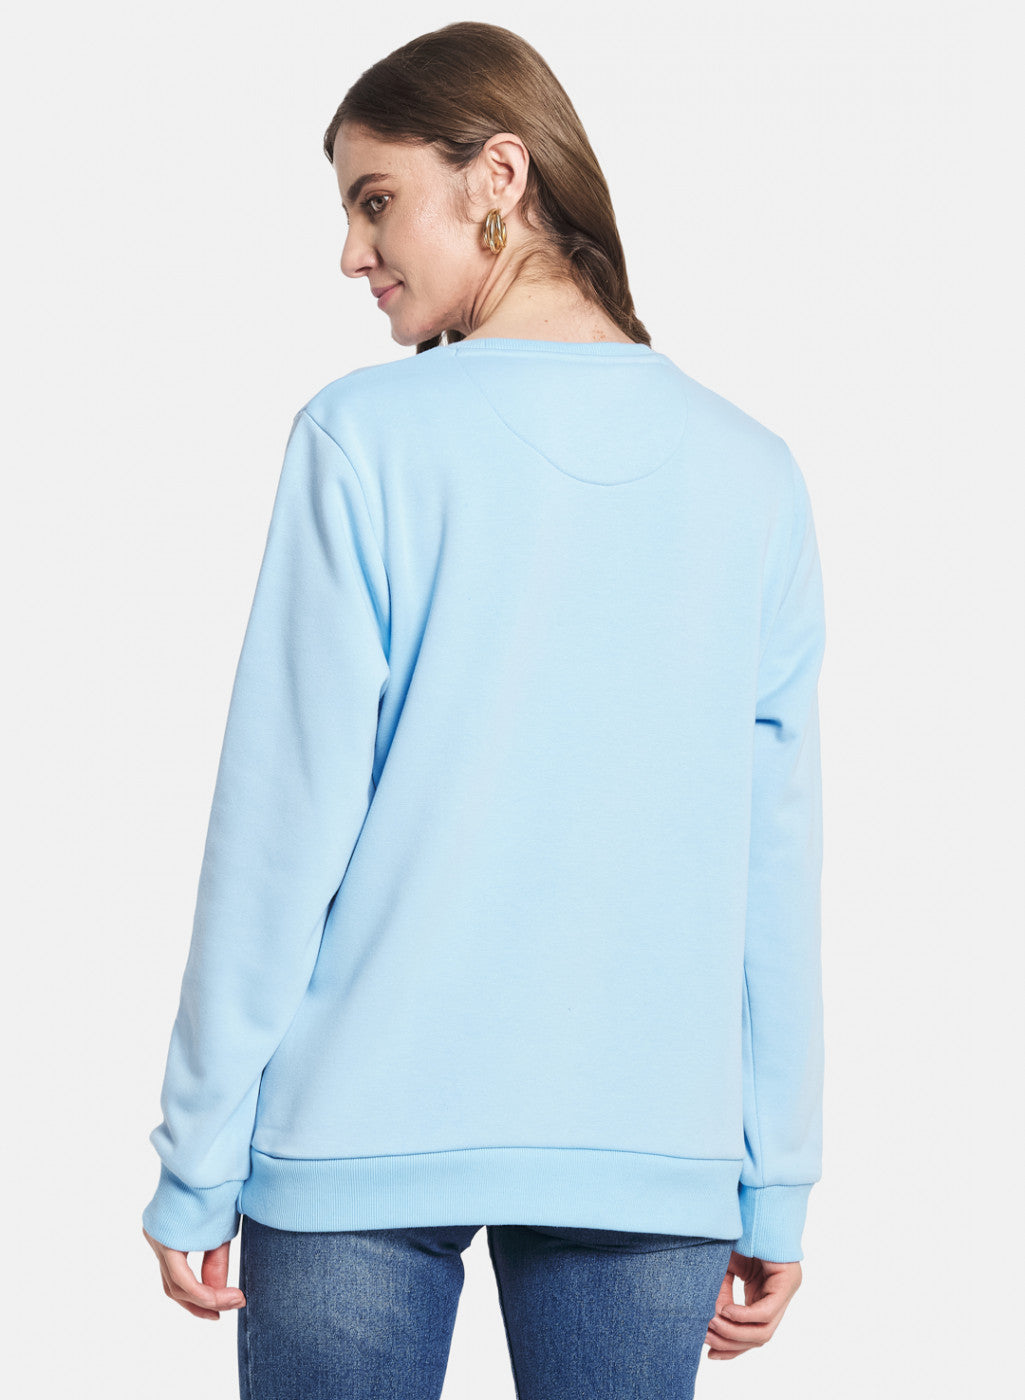 Women Sky Blue Printed Sweatshirt